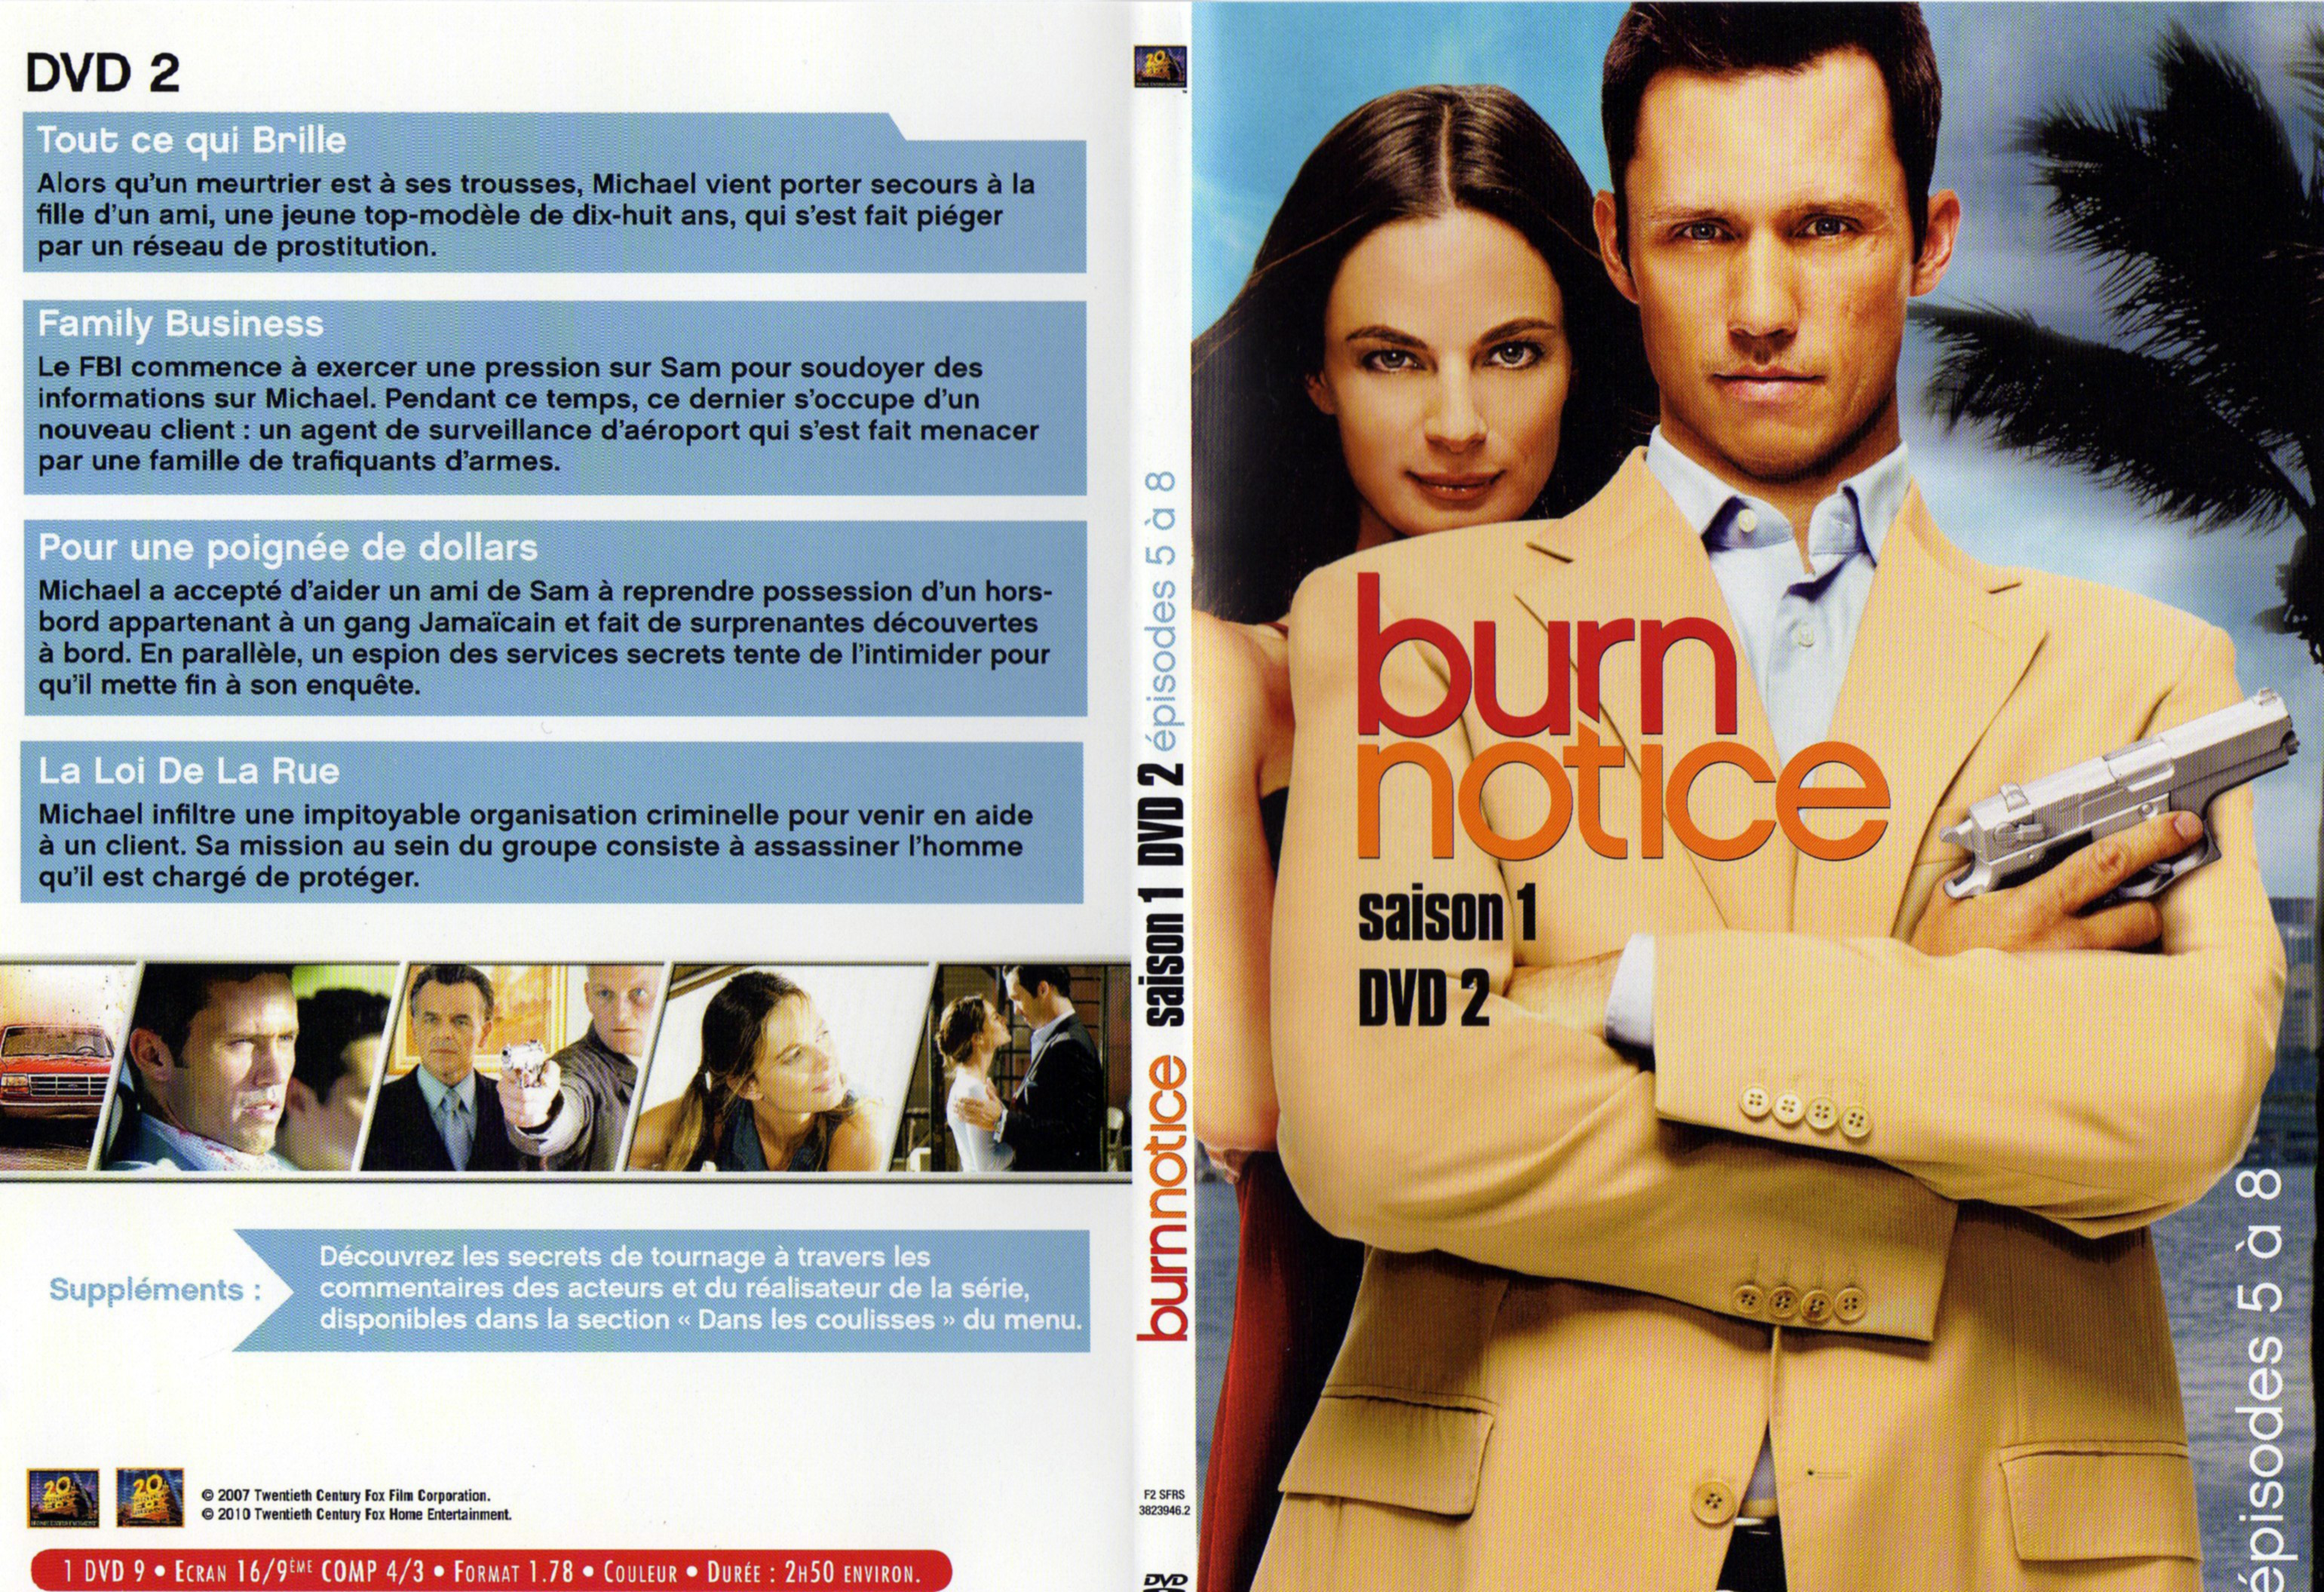 Jaquette DVD Burn notice saison 1 DVD 2